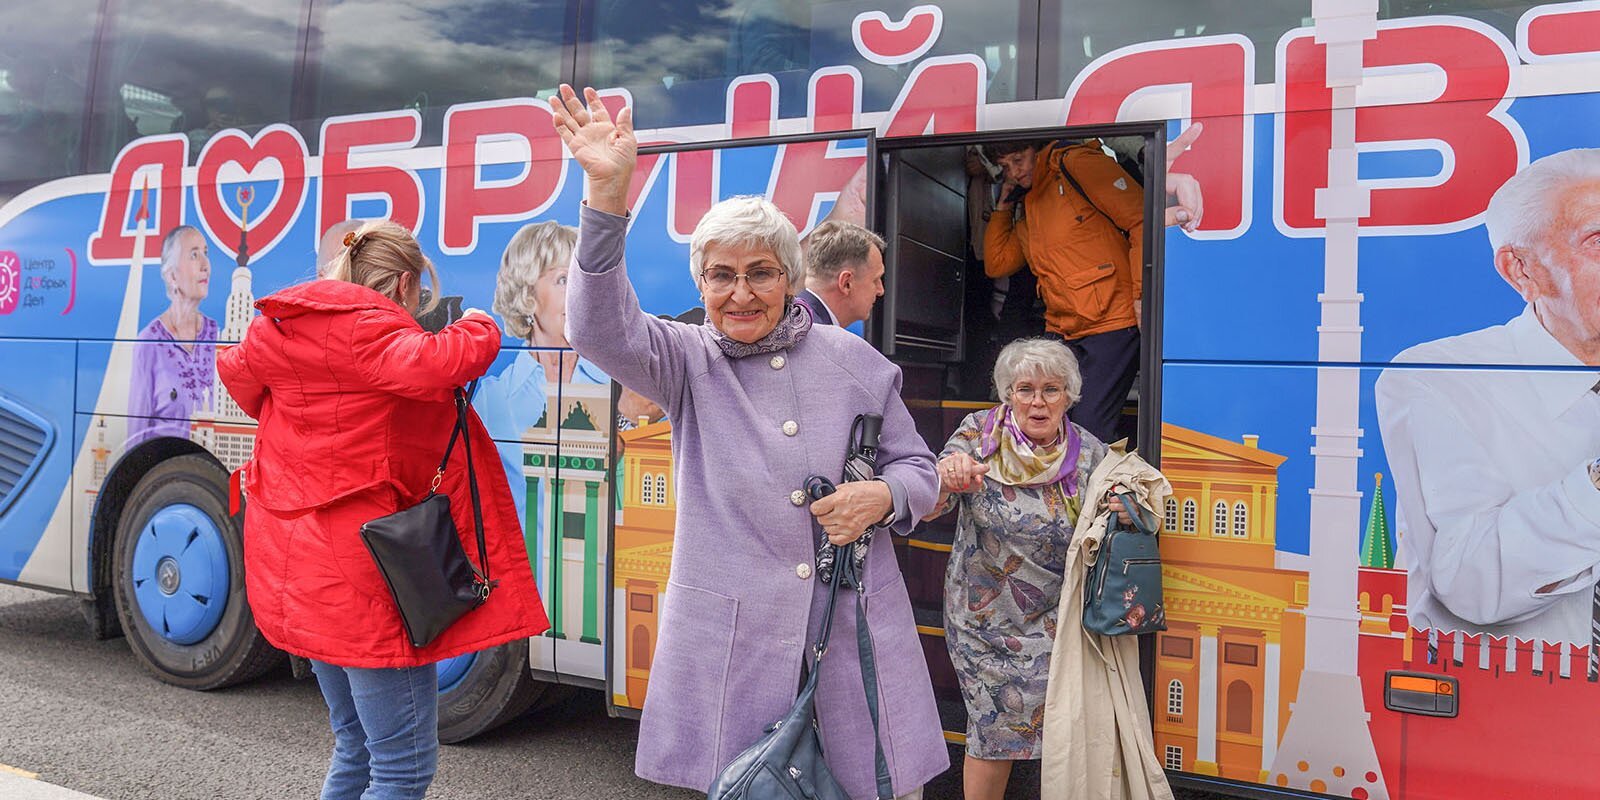 Долголетие добрый автобус. Добрый автобус Московское долголетие. Добрый автобус для пенсионеров Москва 2022. Московское долголетие экскурсии для пенсионеров добрый автобус. Пенсионеры в автобусе.